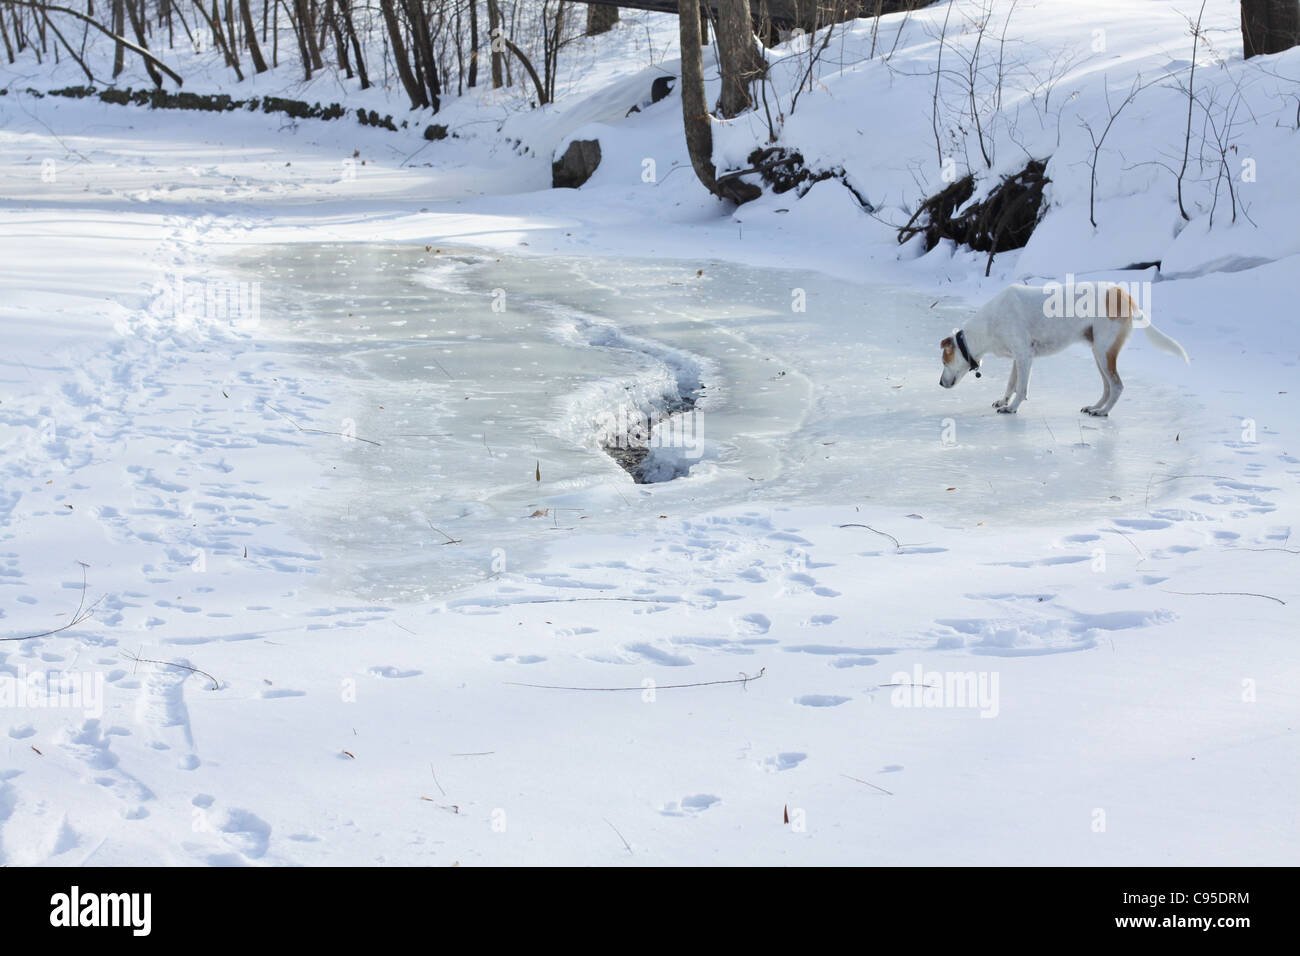 Un chien marchant sur un ruisseau gelé. Banque D'Images